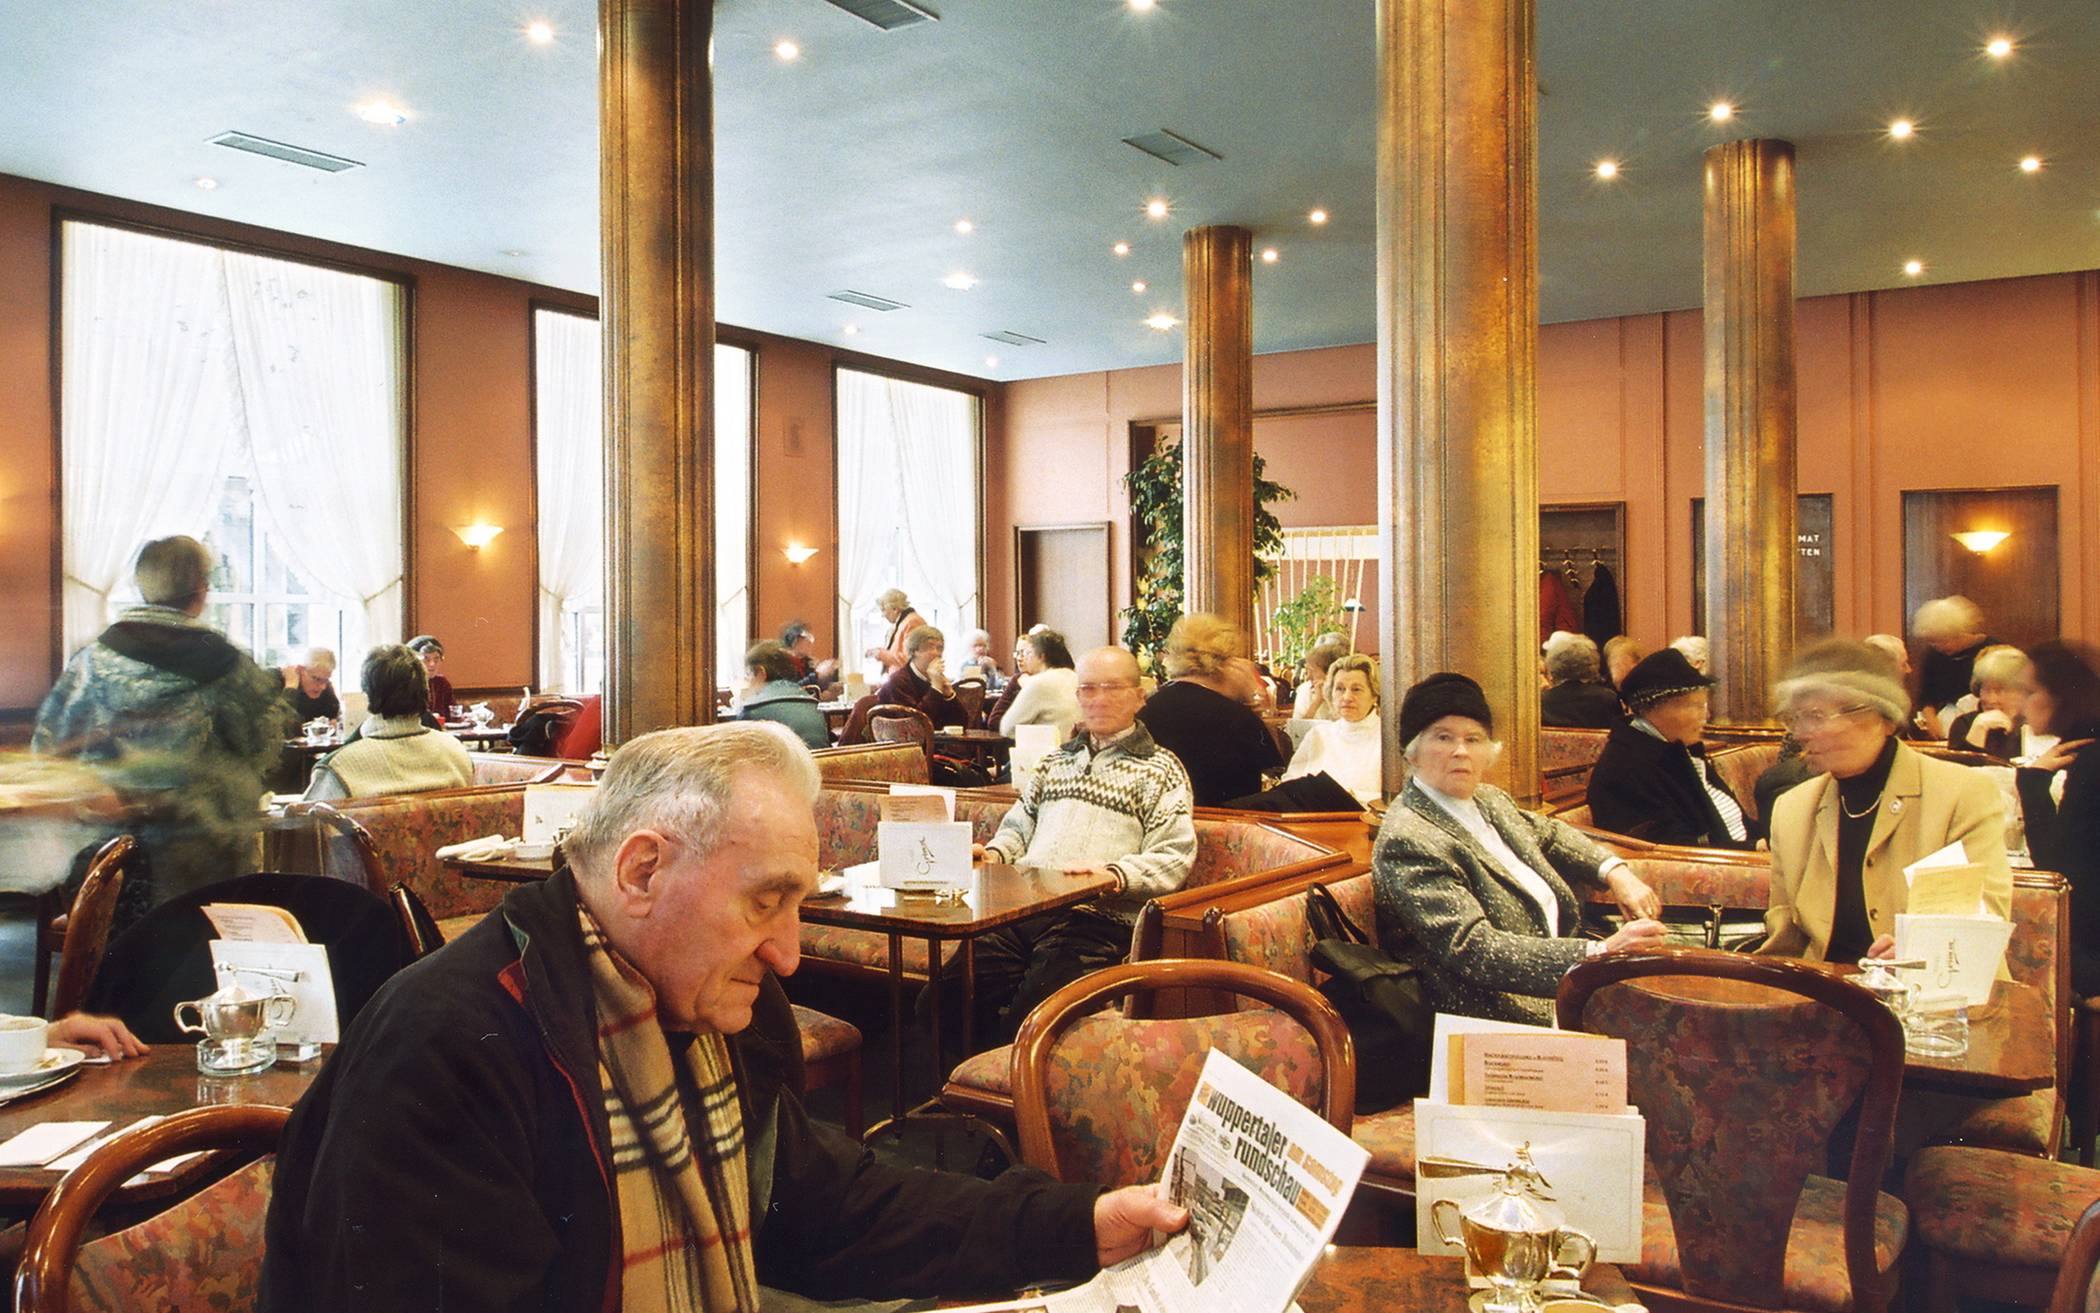  Lang ist es her: Der Innenraum des Café Grimm im Jahr 2004. Das Interieur hatte sich bis zuletzt nicht verändert.&nbsp; 